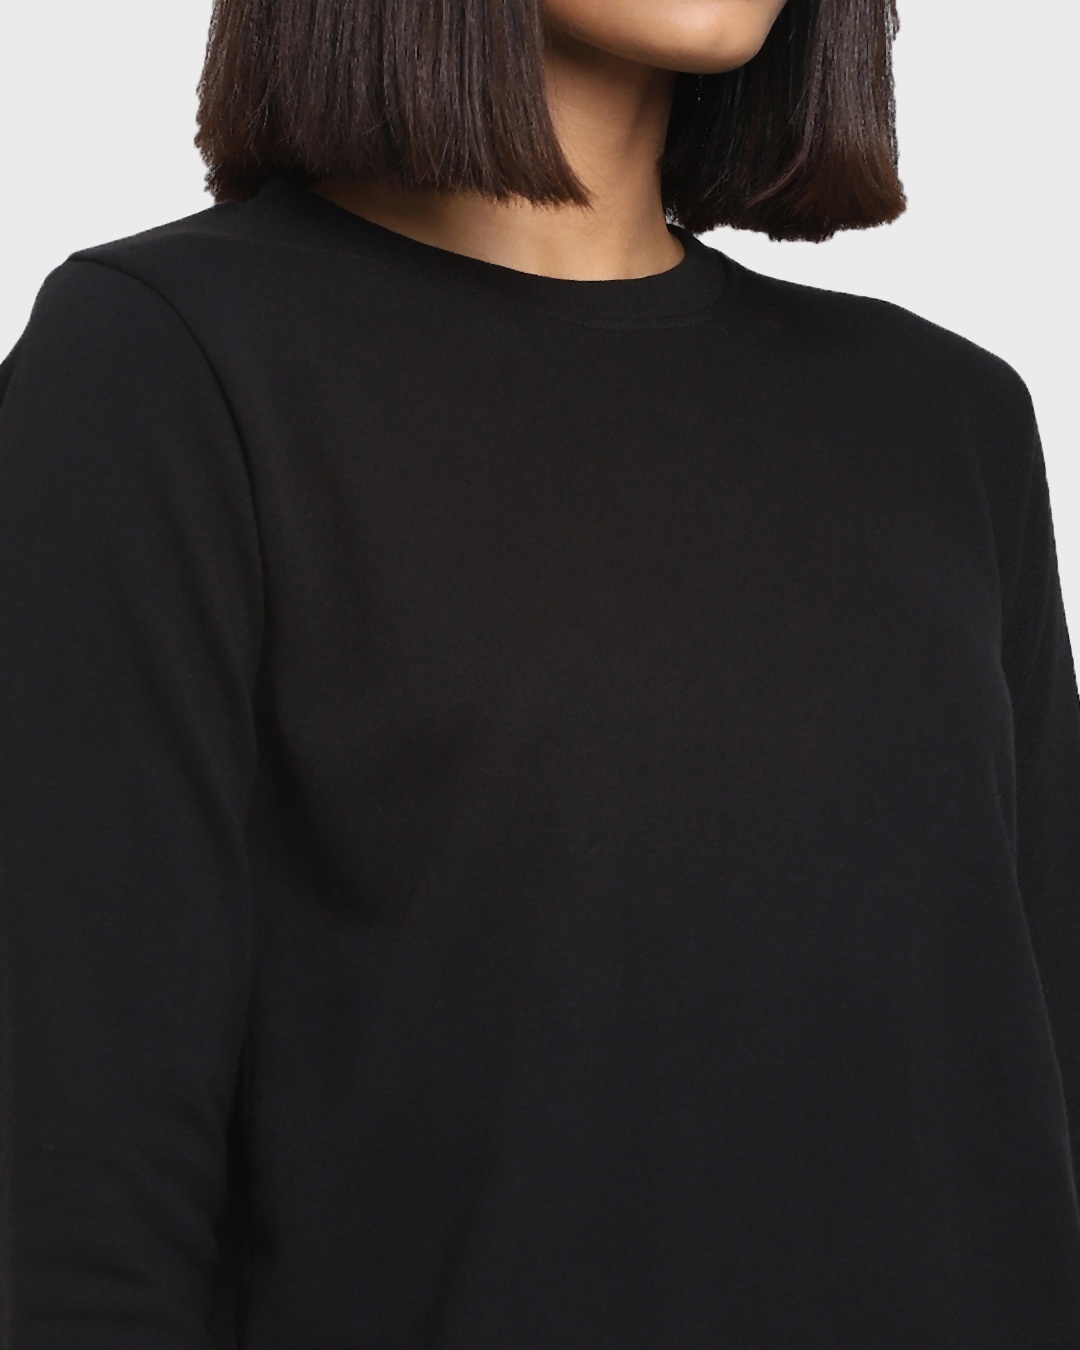 Shop Women's Solid Black Oversized Sweatshirt